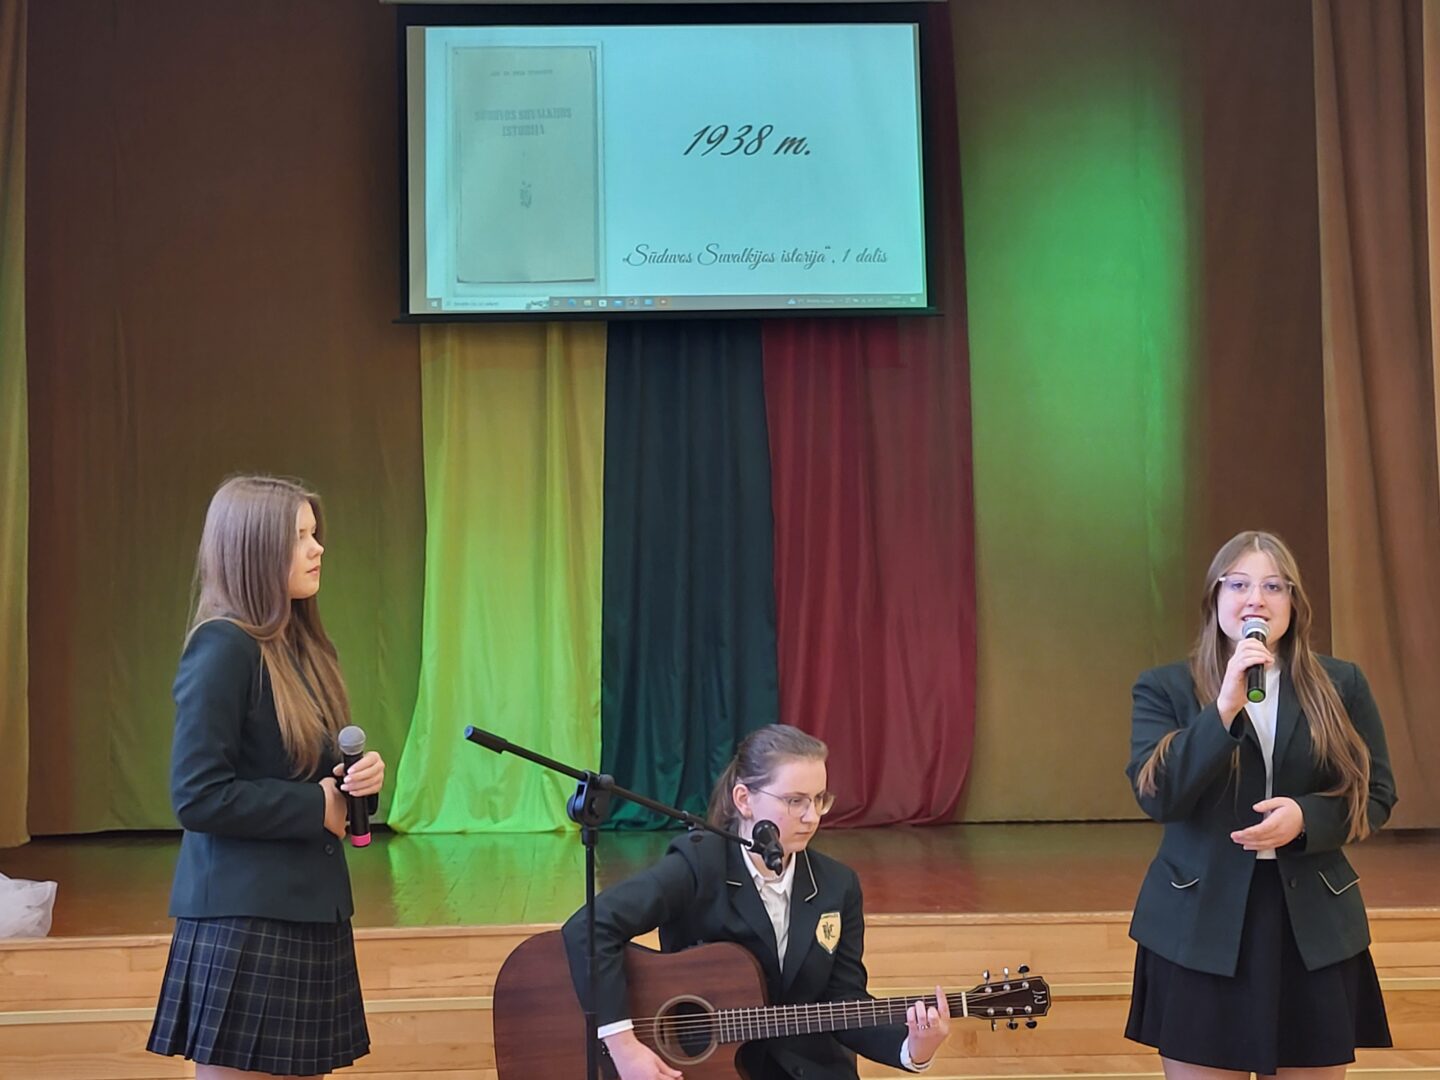 Rygiškių Jono gimnazijos mokiniai džiugino dainomis